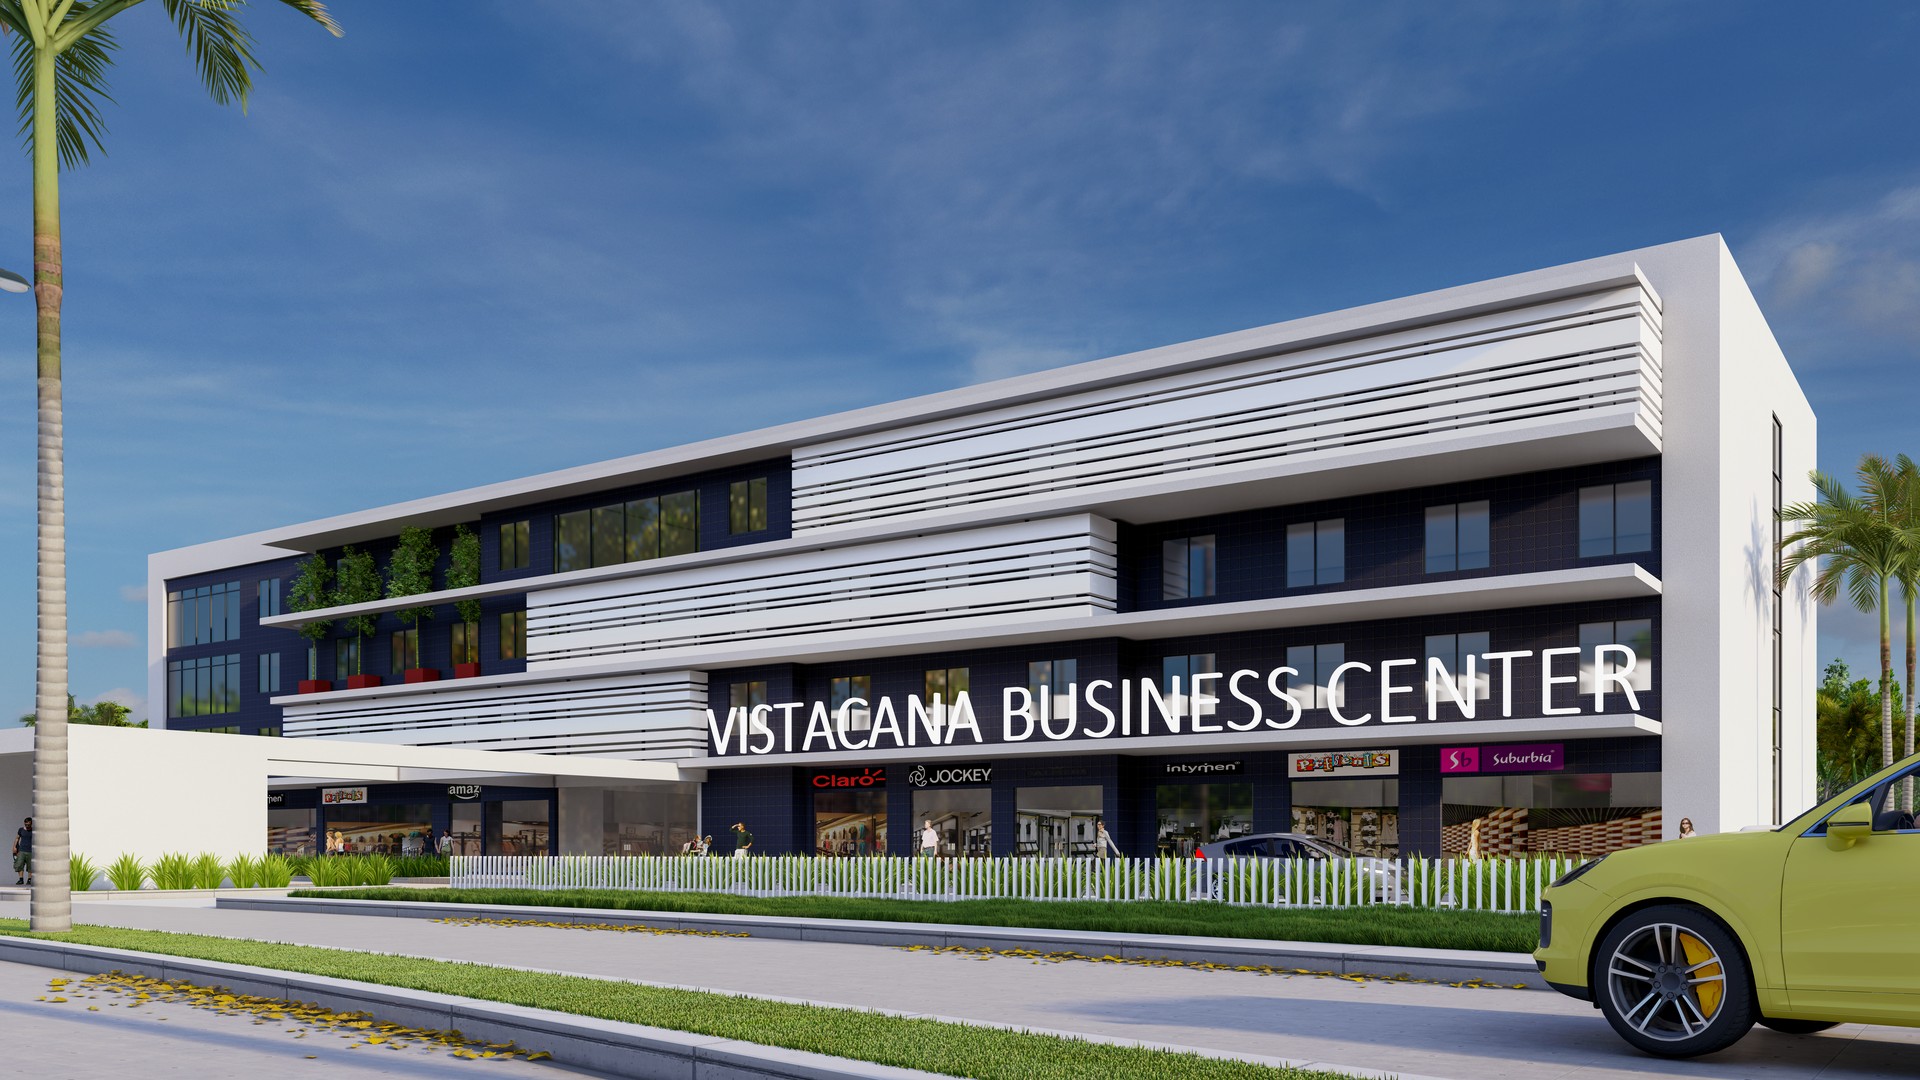 oficinas y locales comerciales - Venta de oficinas comerciales en Vista Cana 2